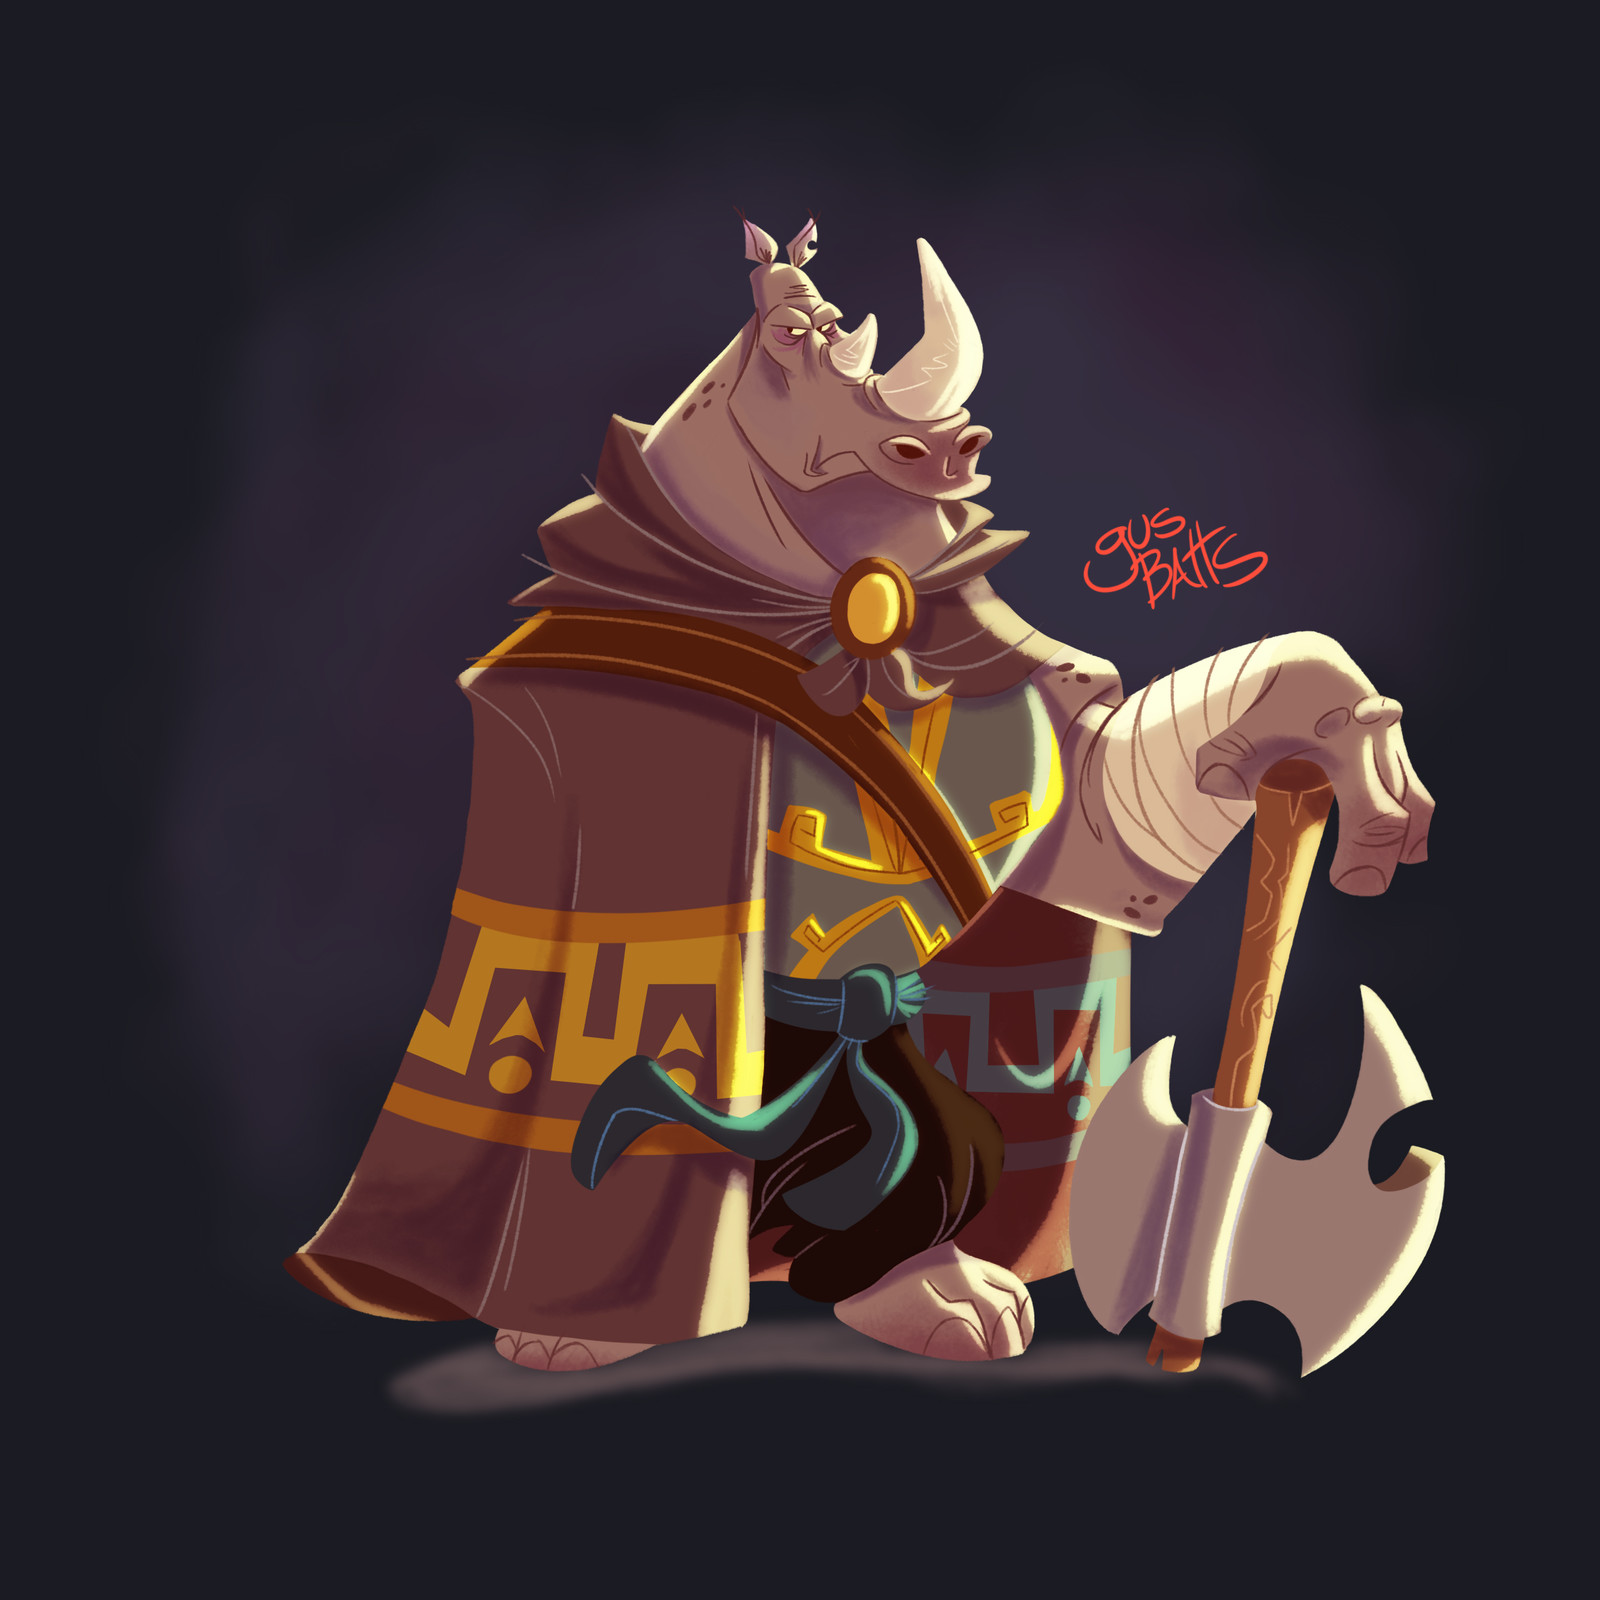 Warrior Rhino character design